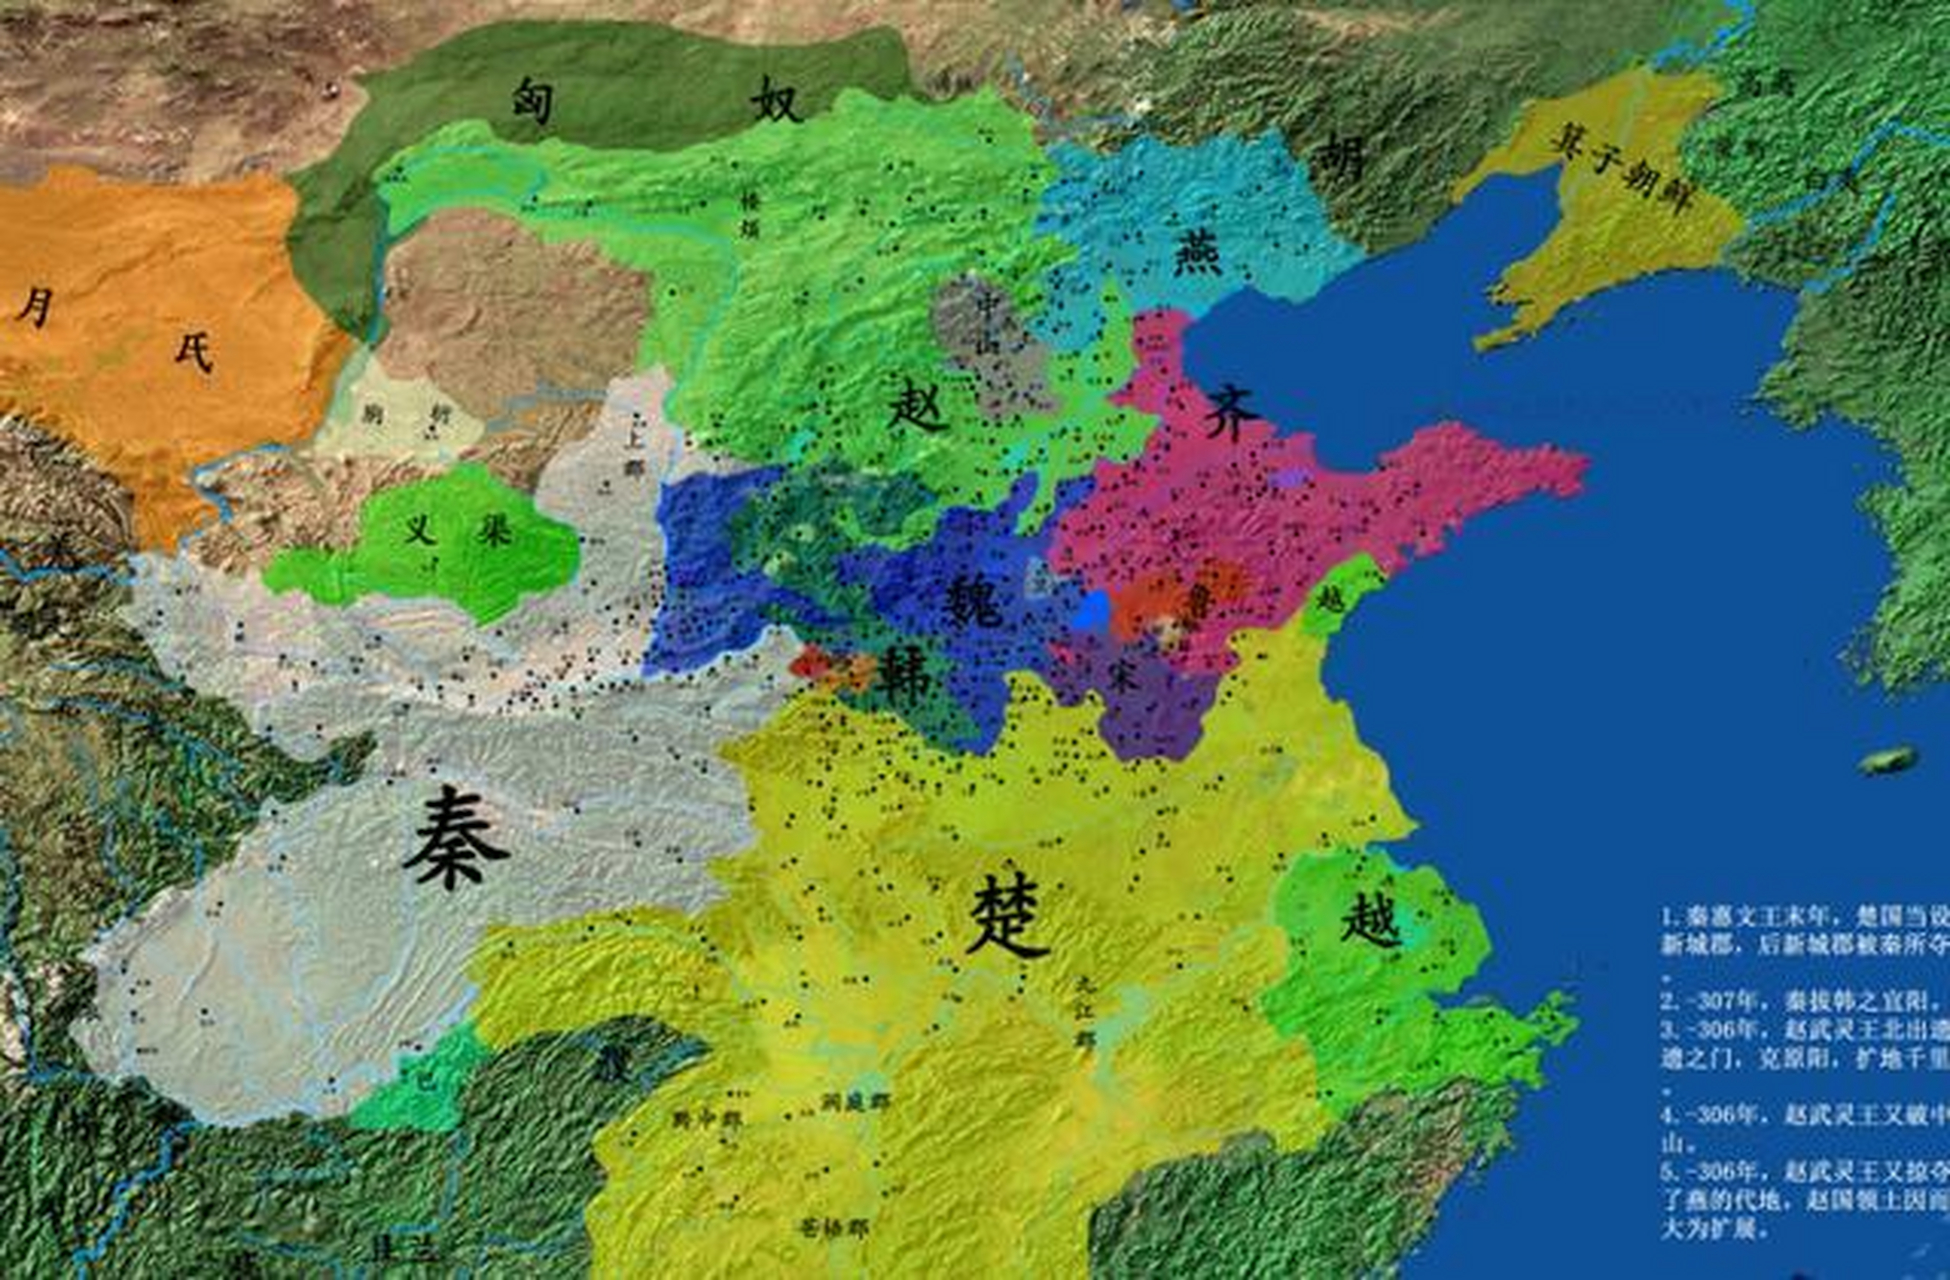 燕国建立于公元前1022年,第一任国君是燕召公